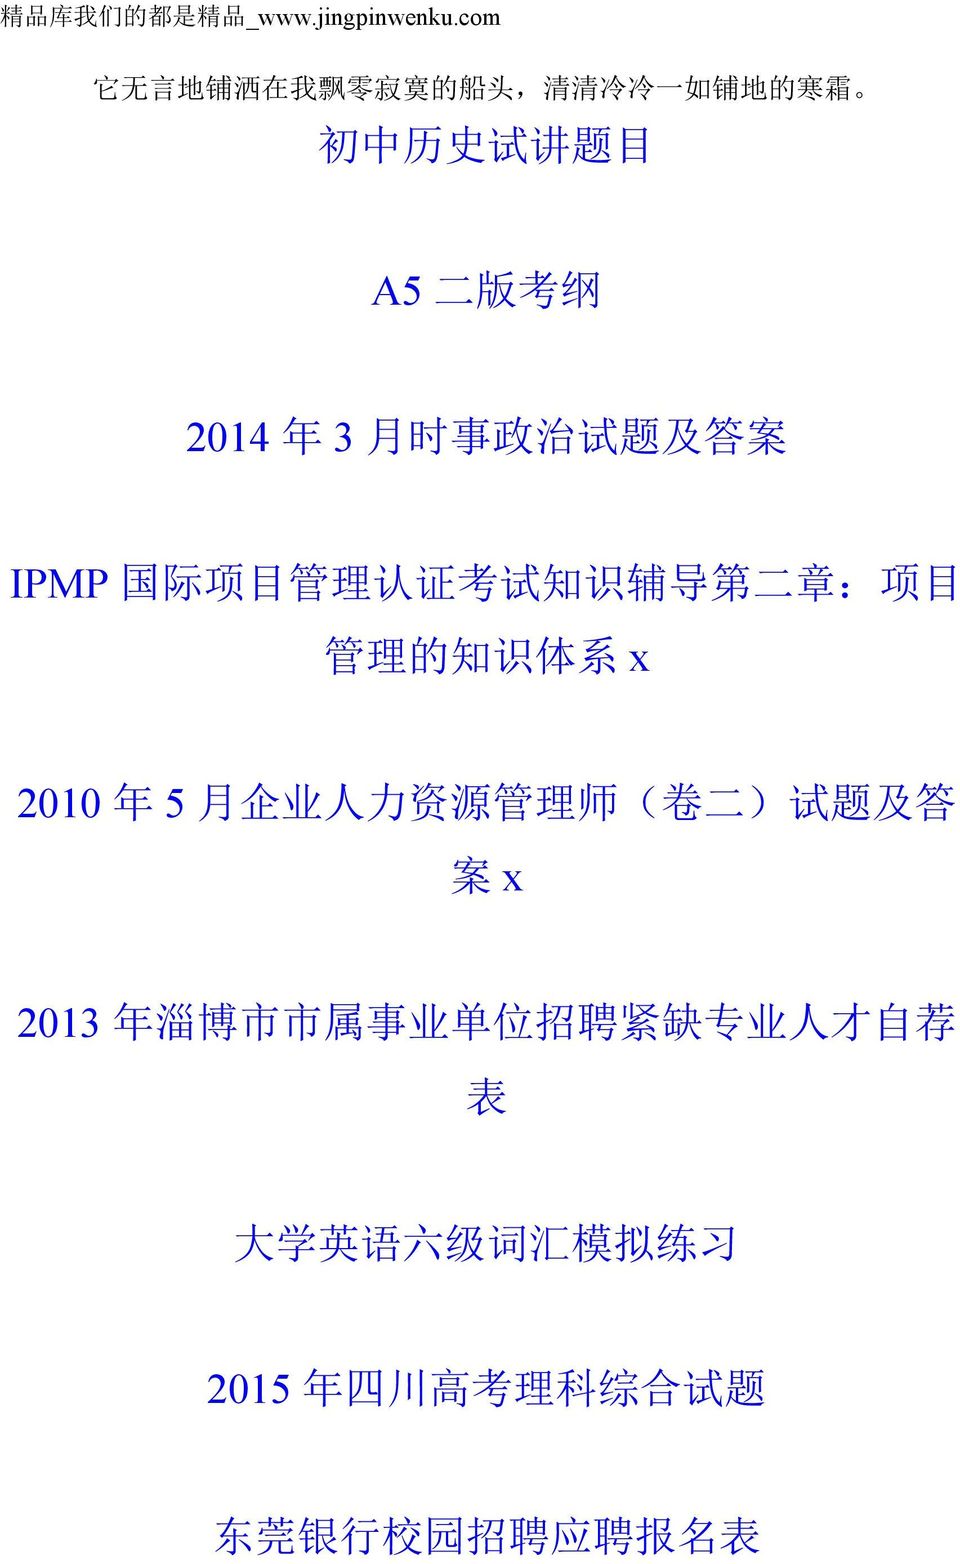 时 事 政 治 试 题 及 答 案 IPMP 国 际 项 目 管 理 认 证 考 试 知 识 辅 导 第 二 章 : 项 目 管 理 的 知 识 体 系 x 2010 年 5 月 企 业 人